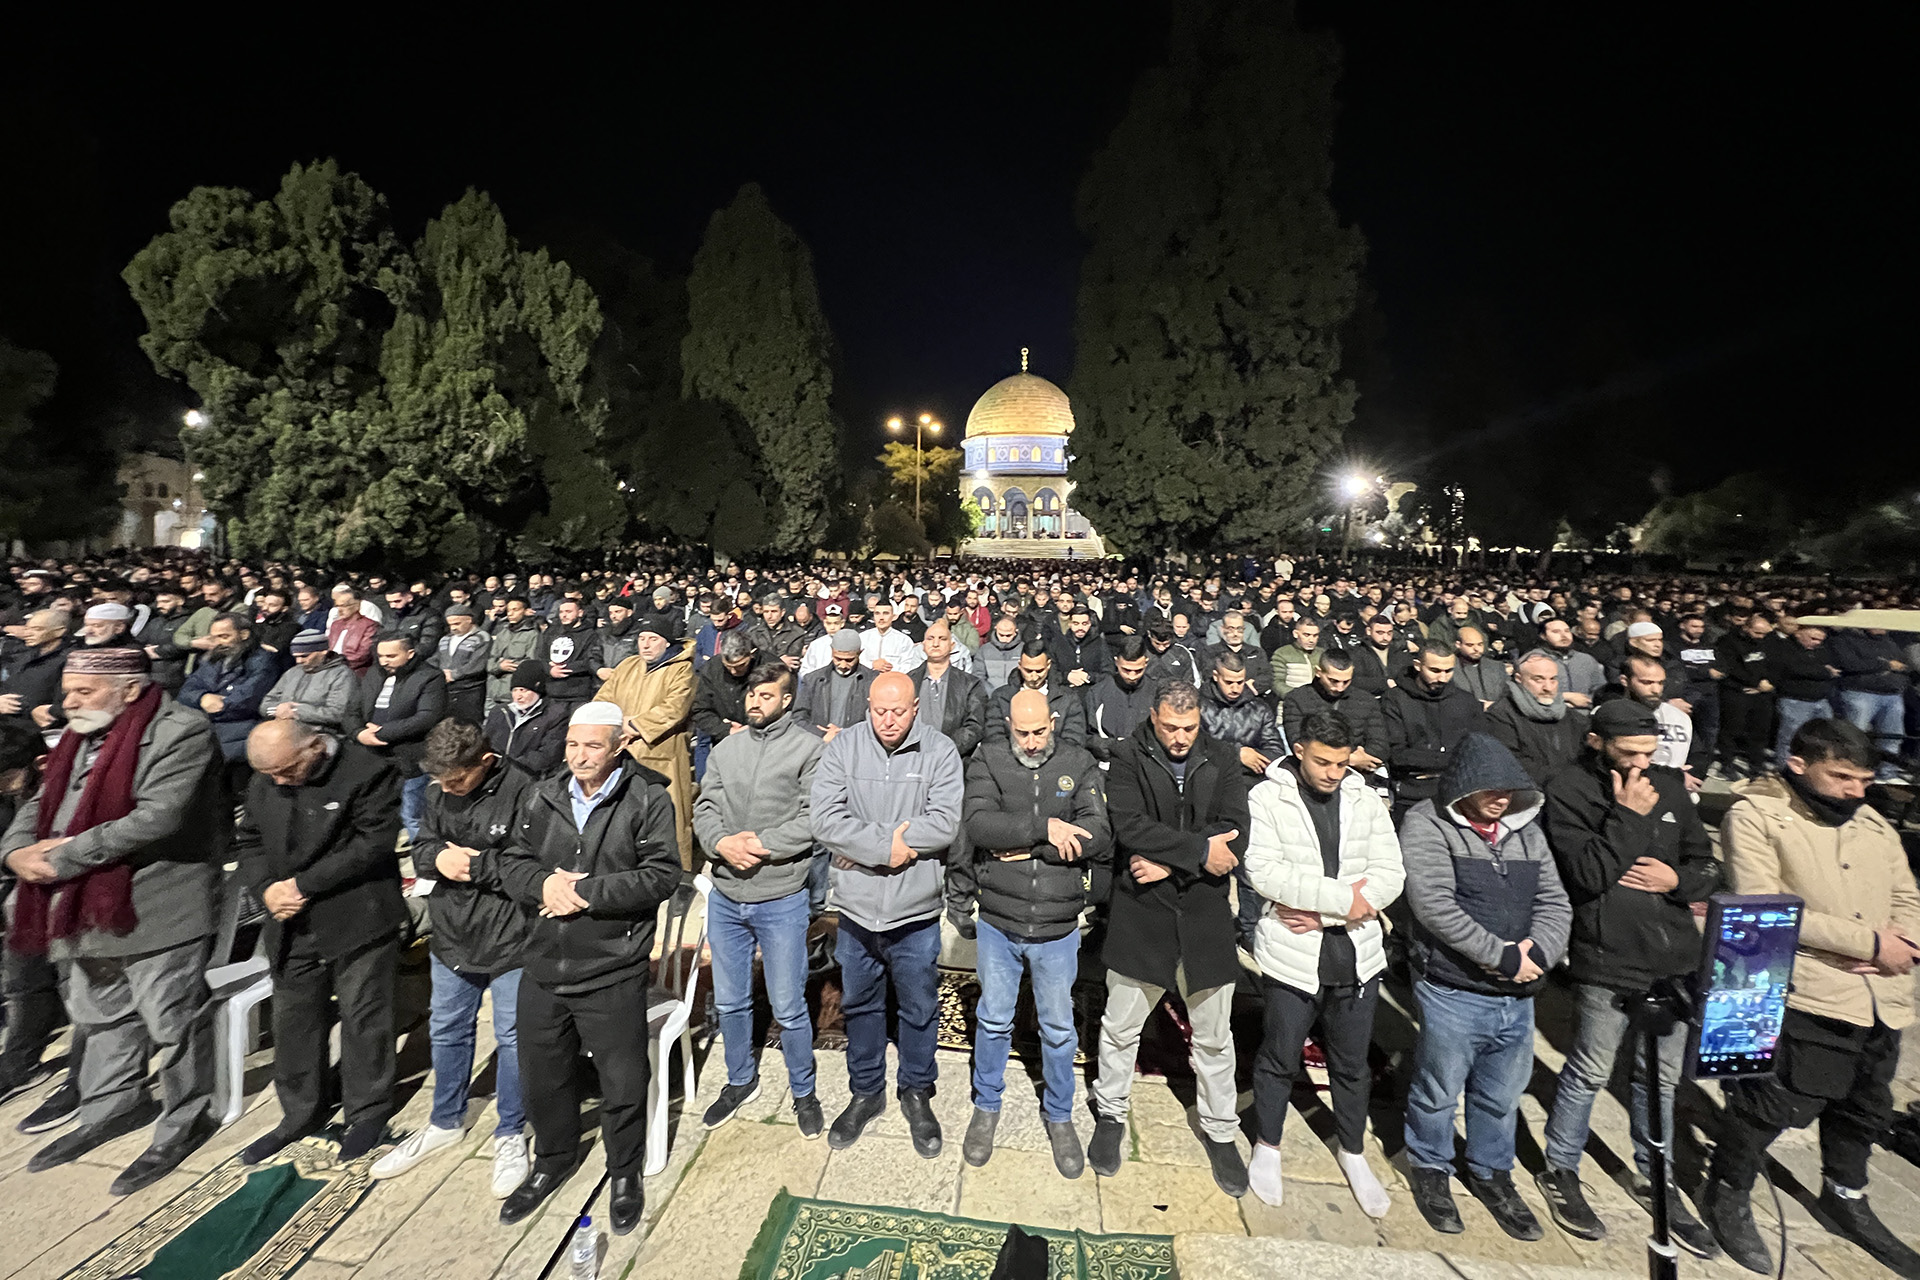 القدس تستقبل رمضان بإجراءات أمنية وقيود على الصلاة وجنود فوق قبة الصخرة | سياسة – البوكس نيوز